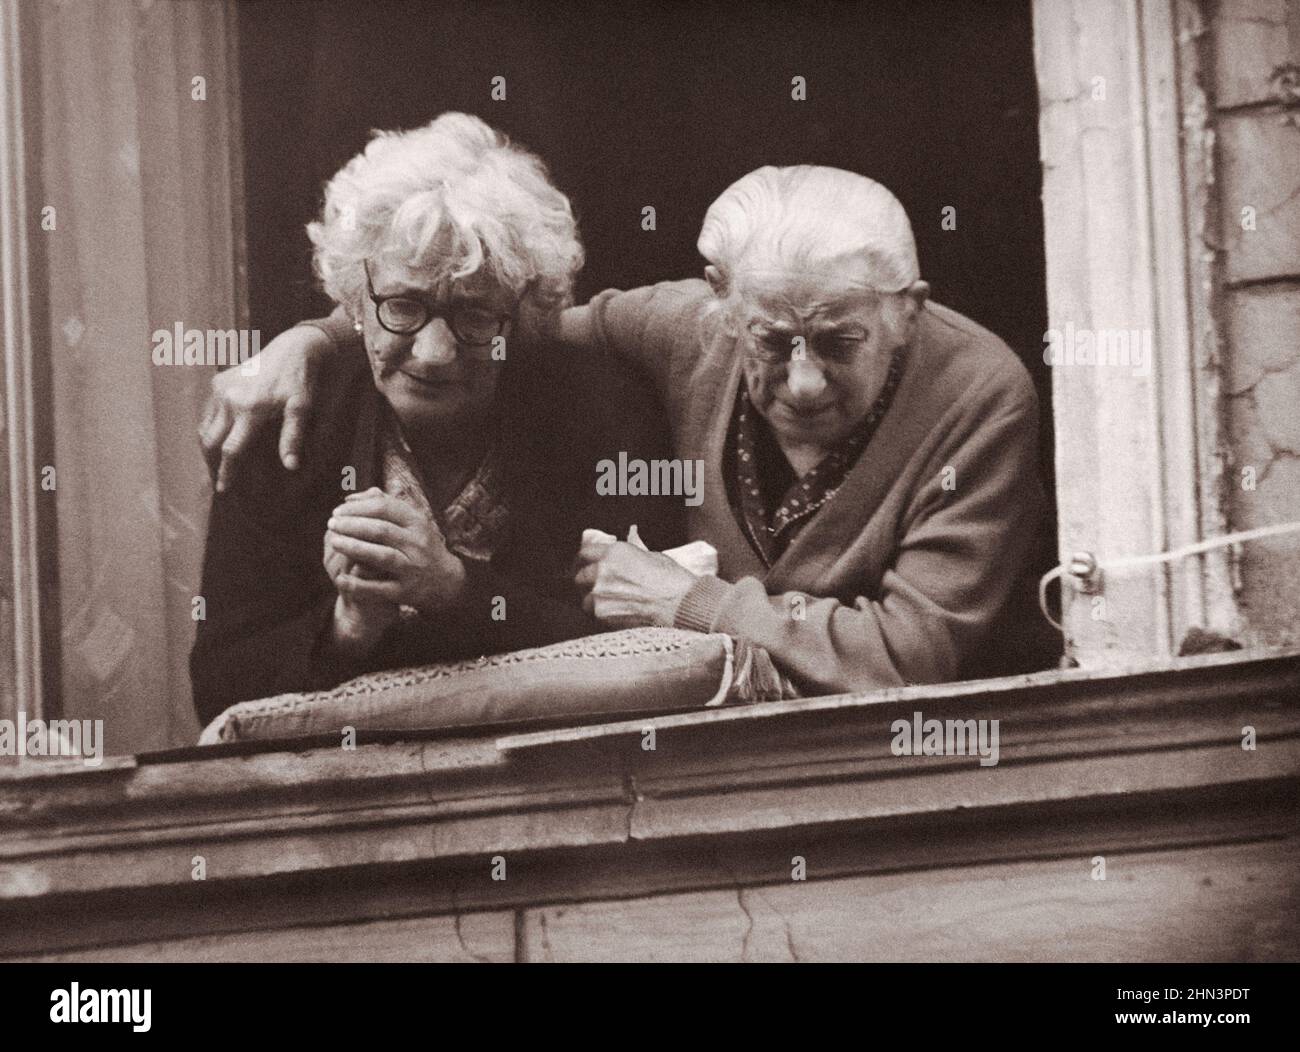 Photo d'époque de la crise de Berlin de 1961 : construire le mur. Deux femmes du côté est du mur de Berlin montrent leurs émotions de désir de liberté Banque D'Images